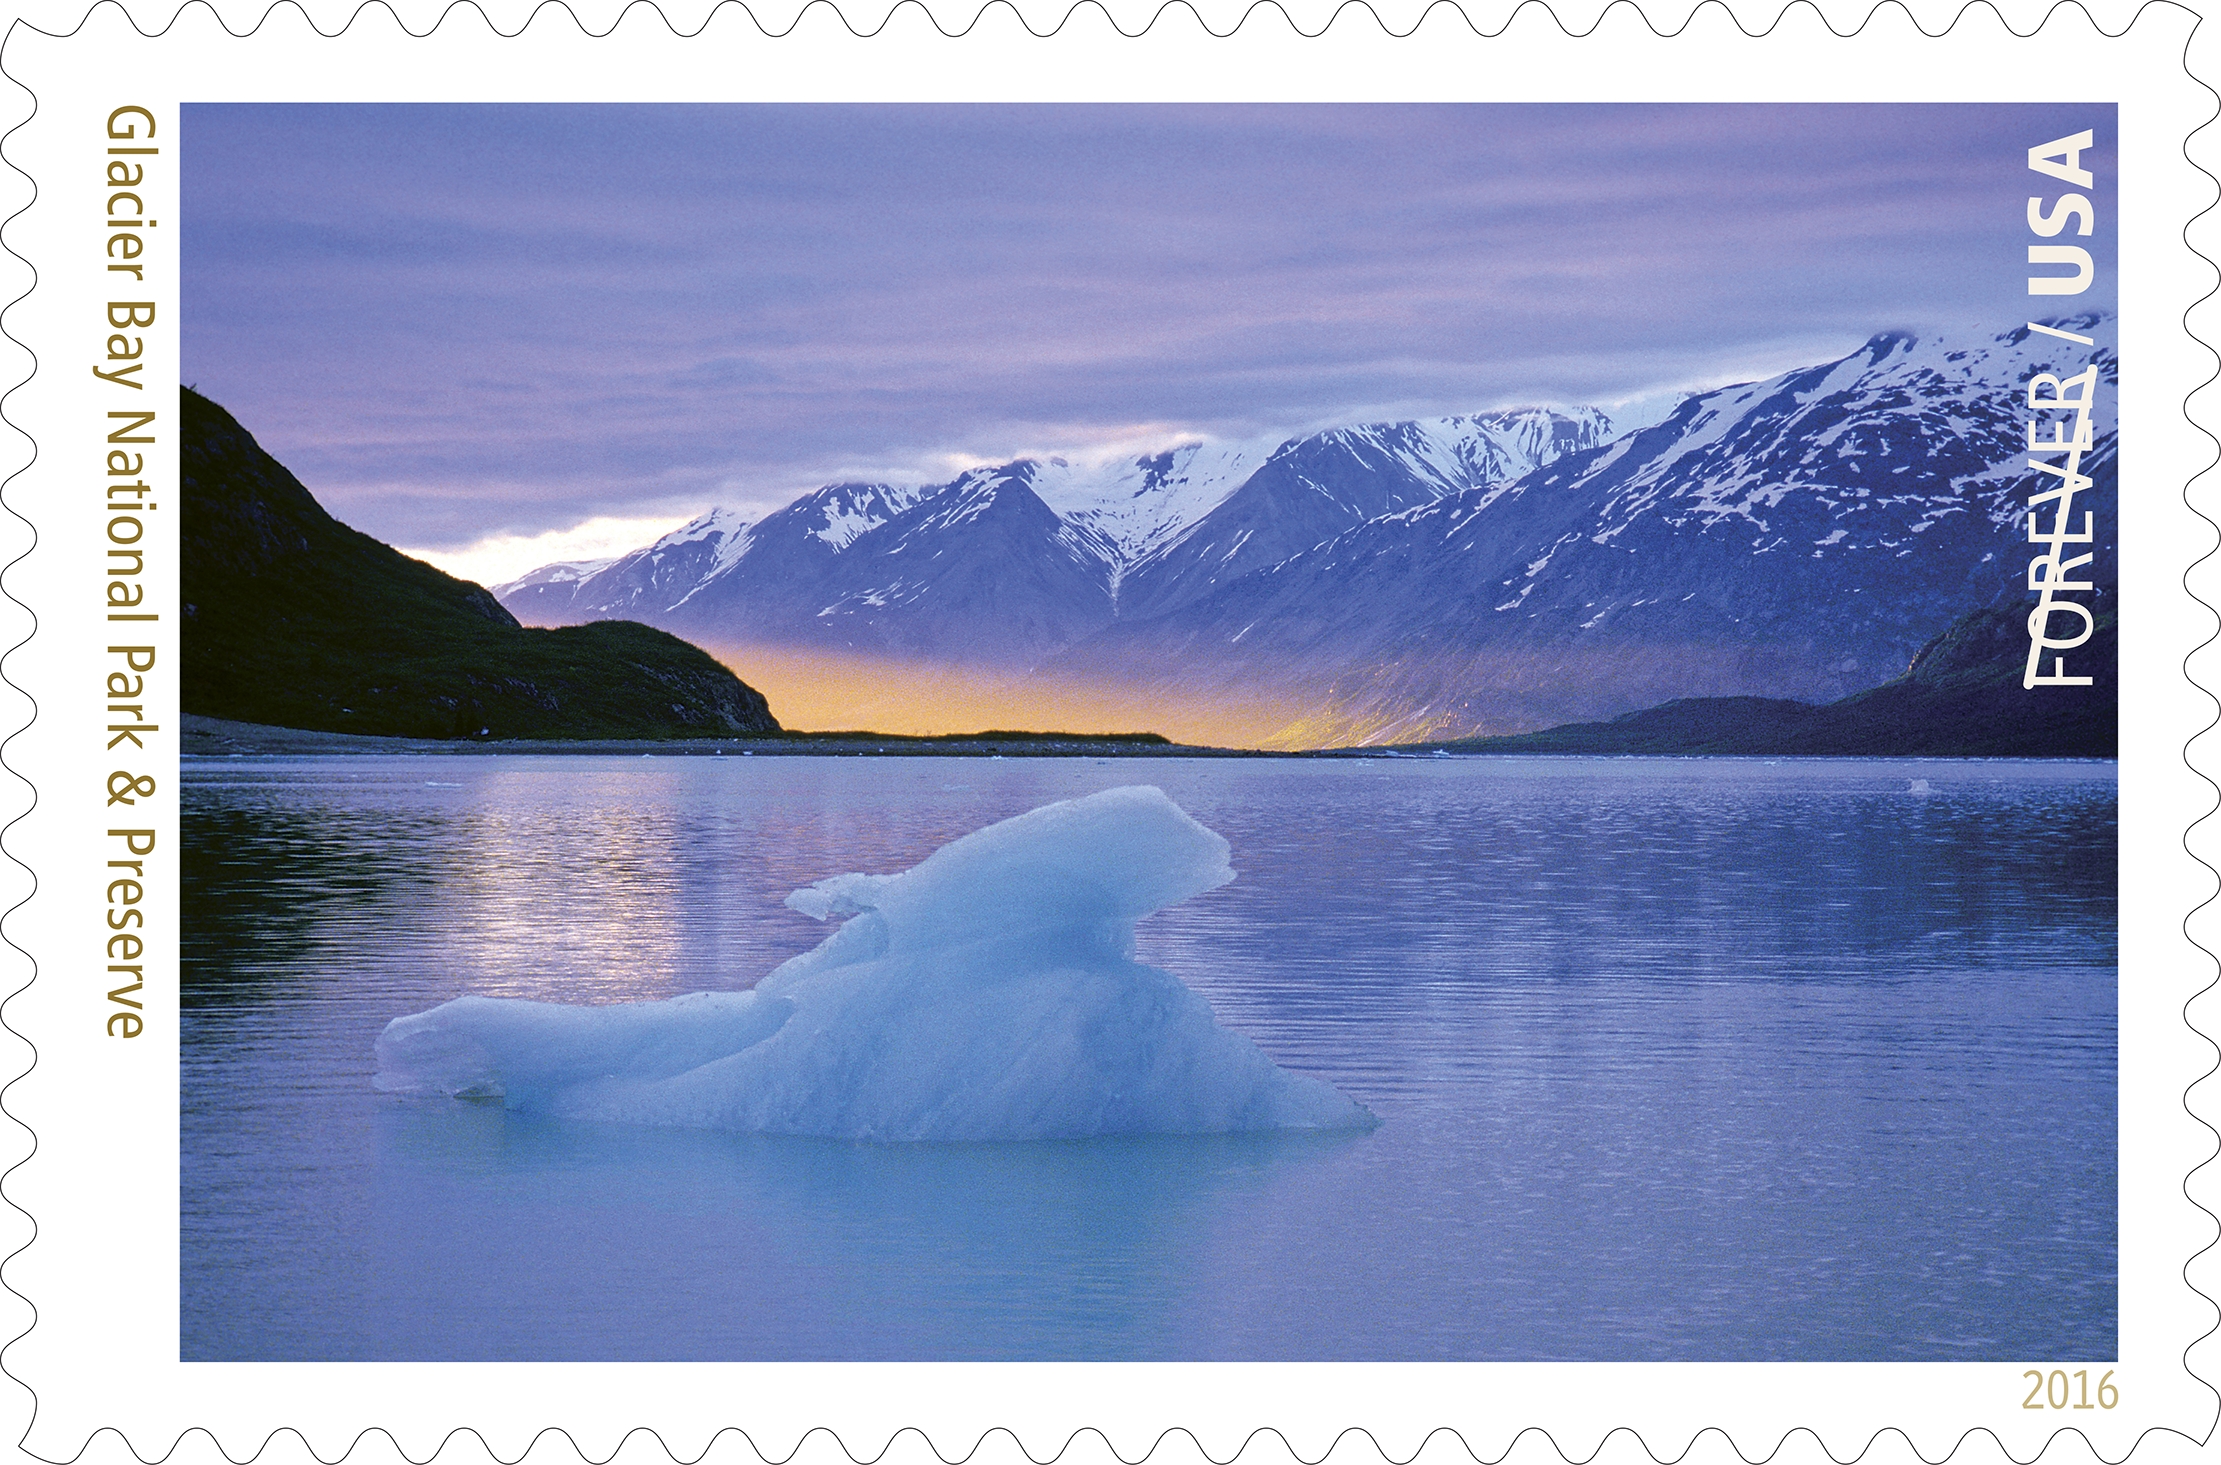 Glacier Bay National Park stamp